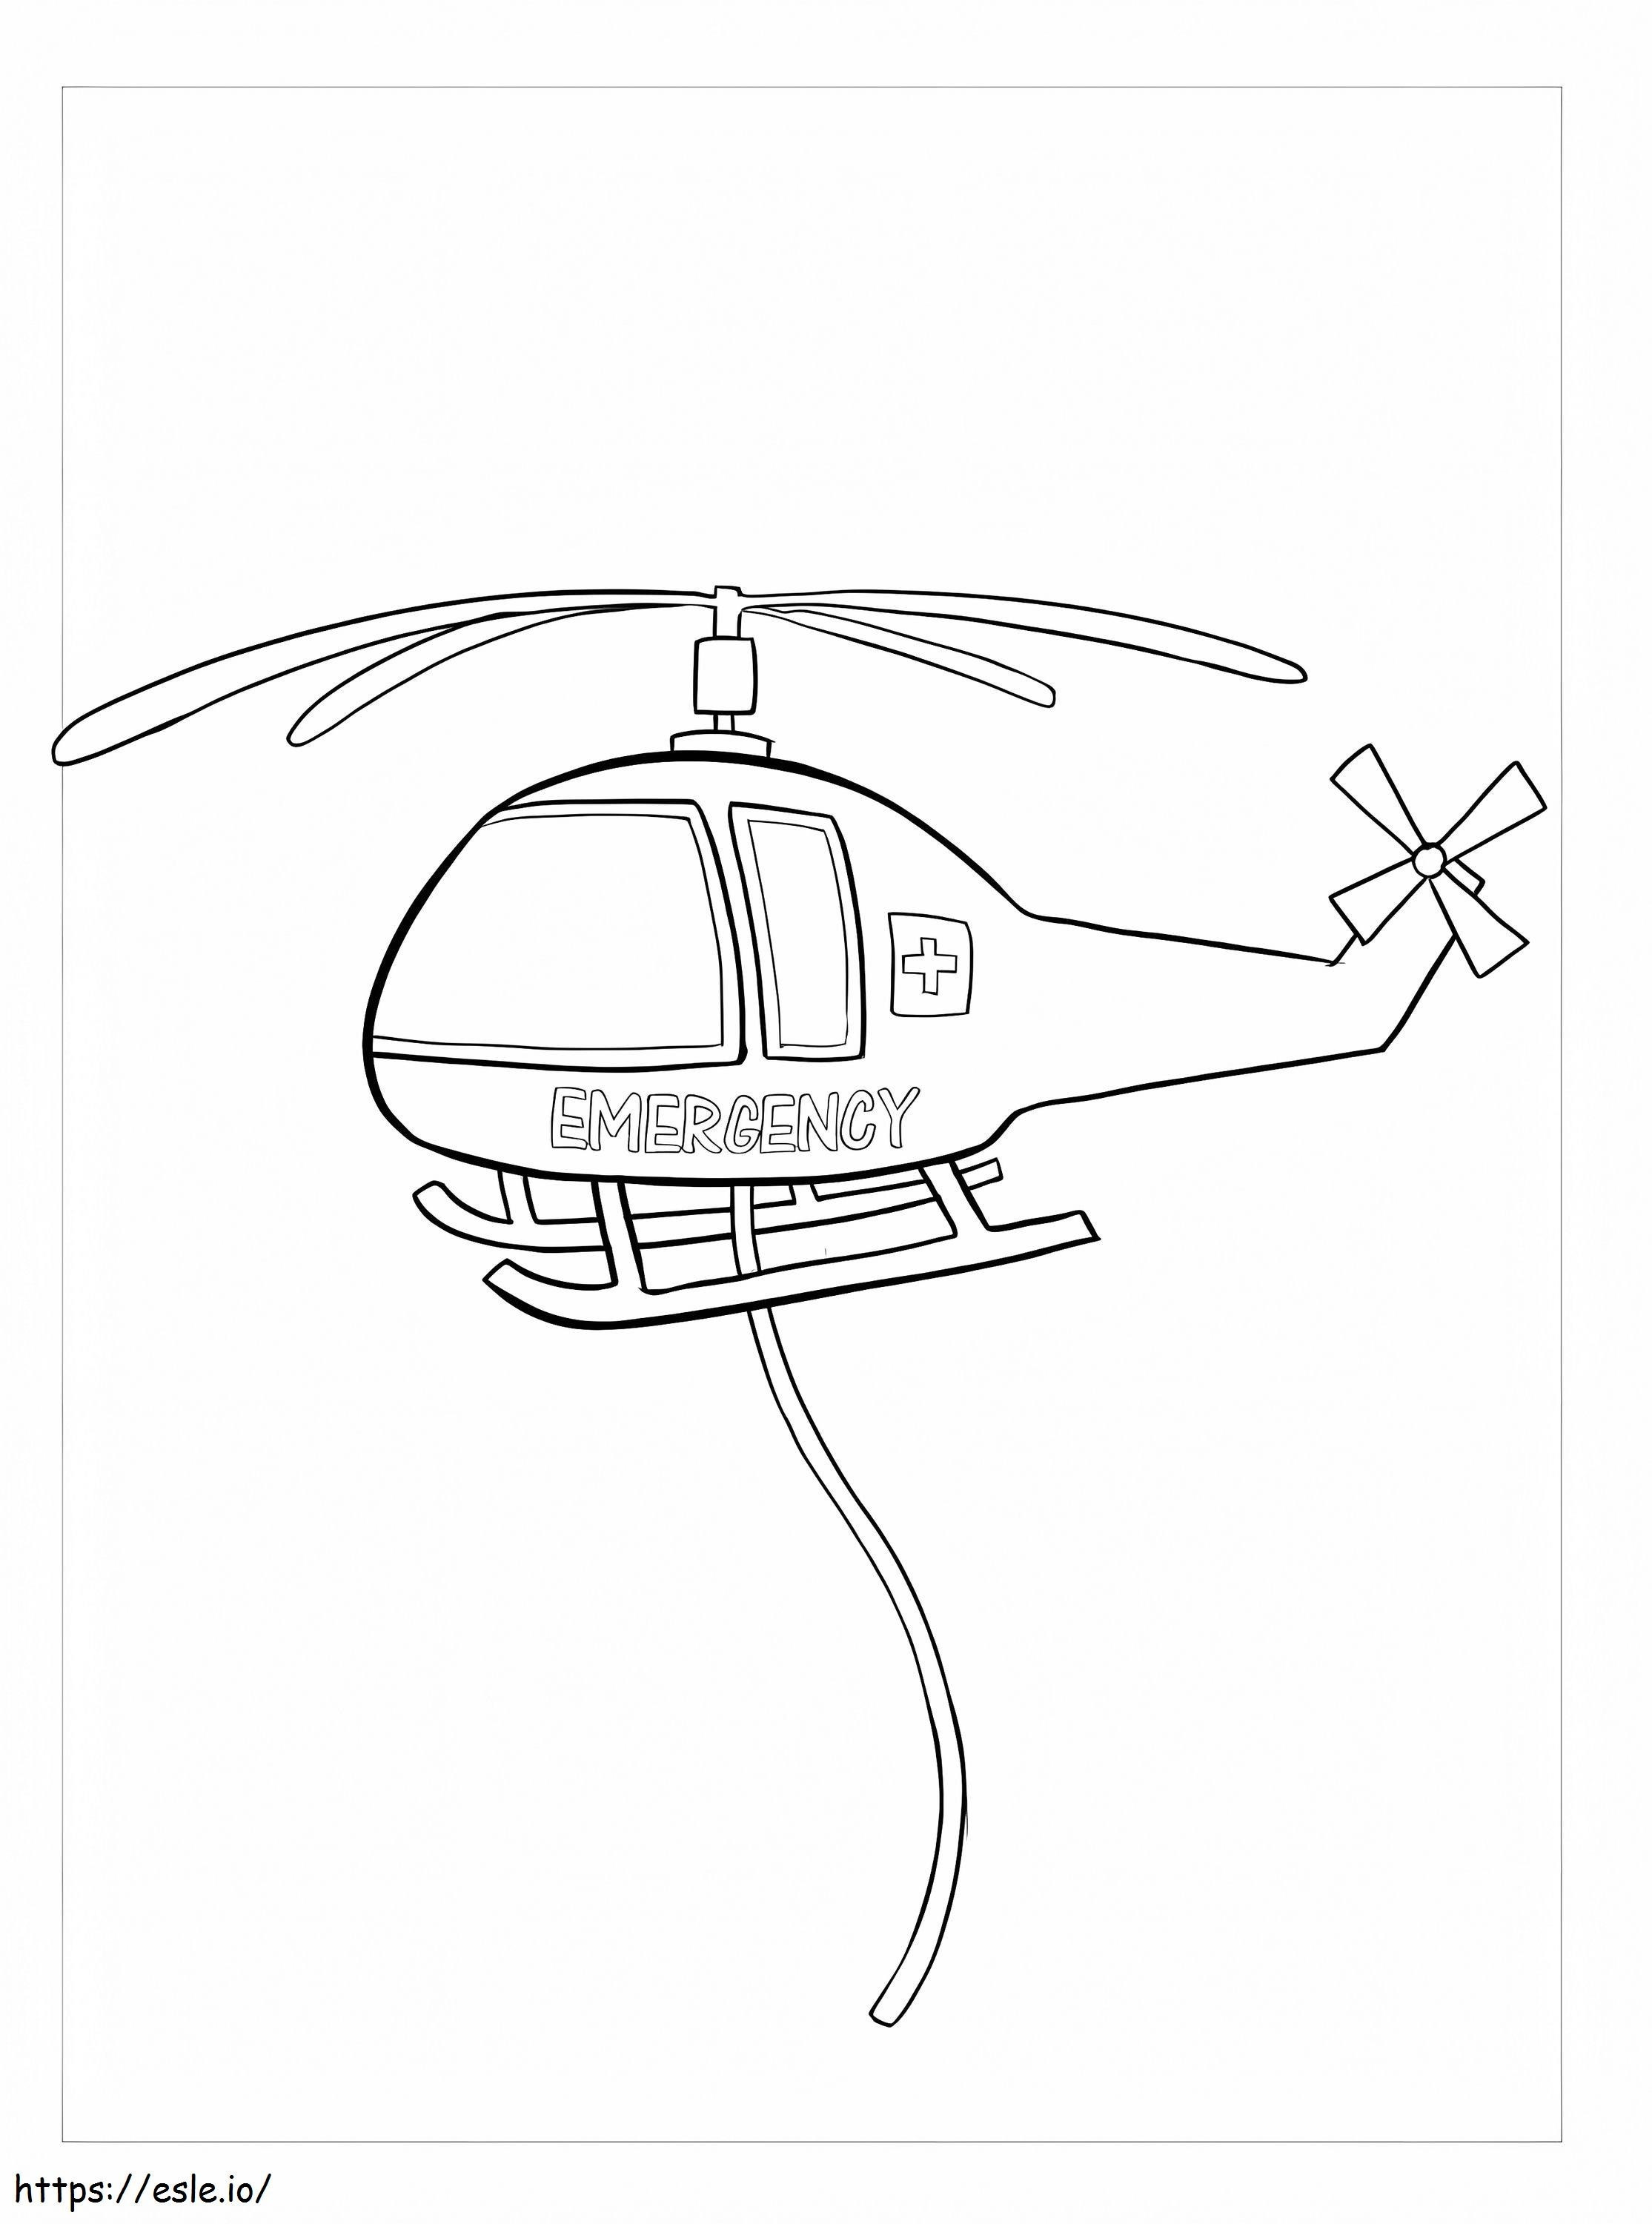 Einfacher Hubschrauber ausmalbilder